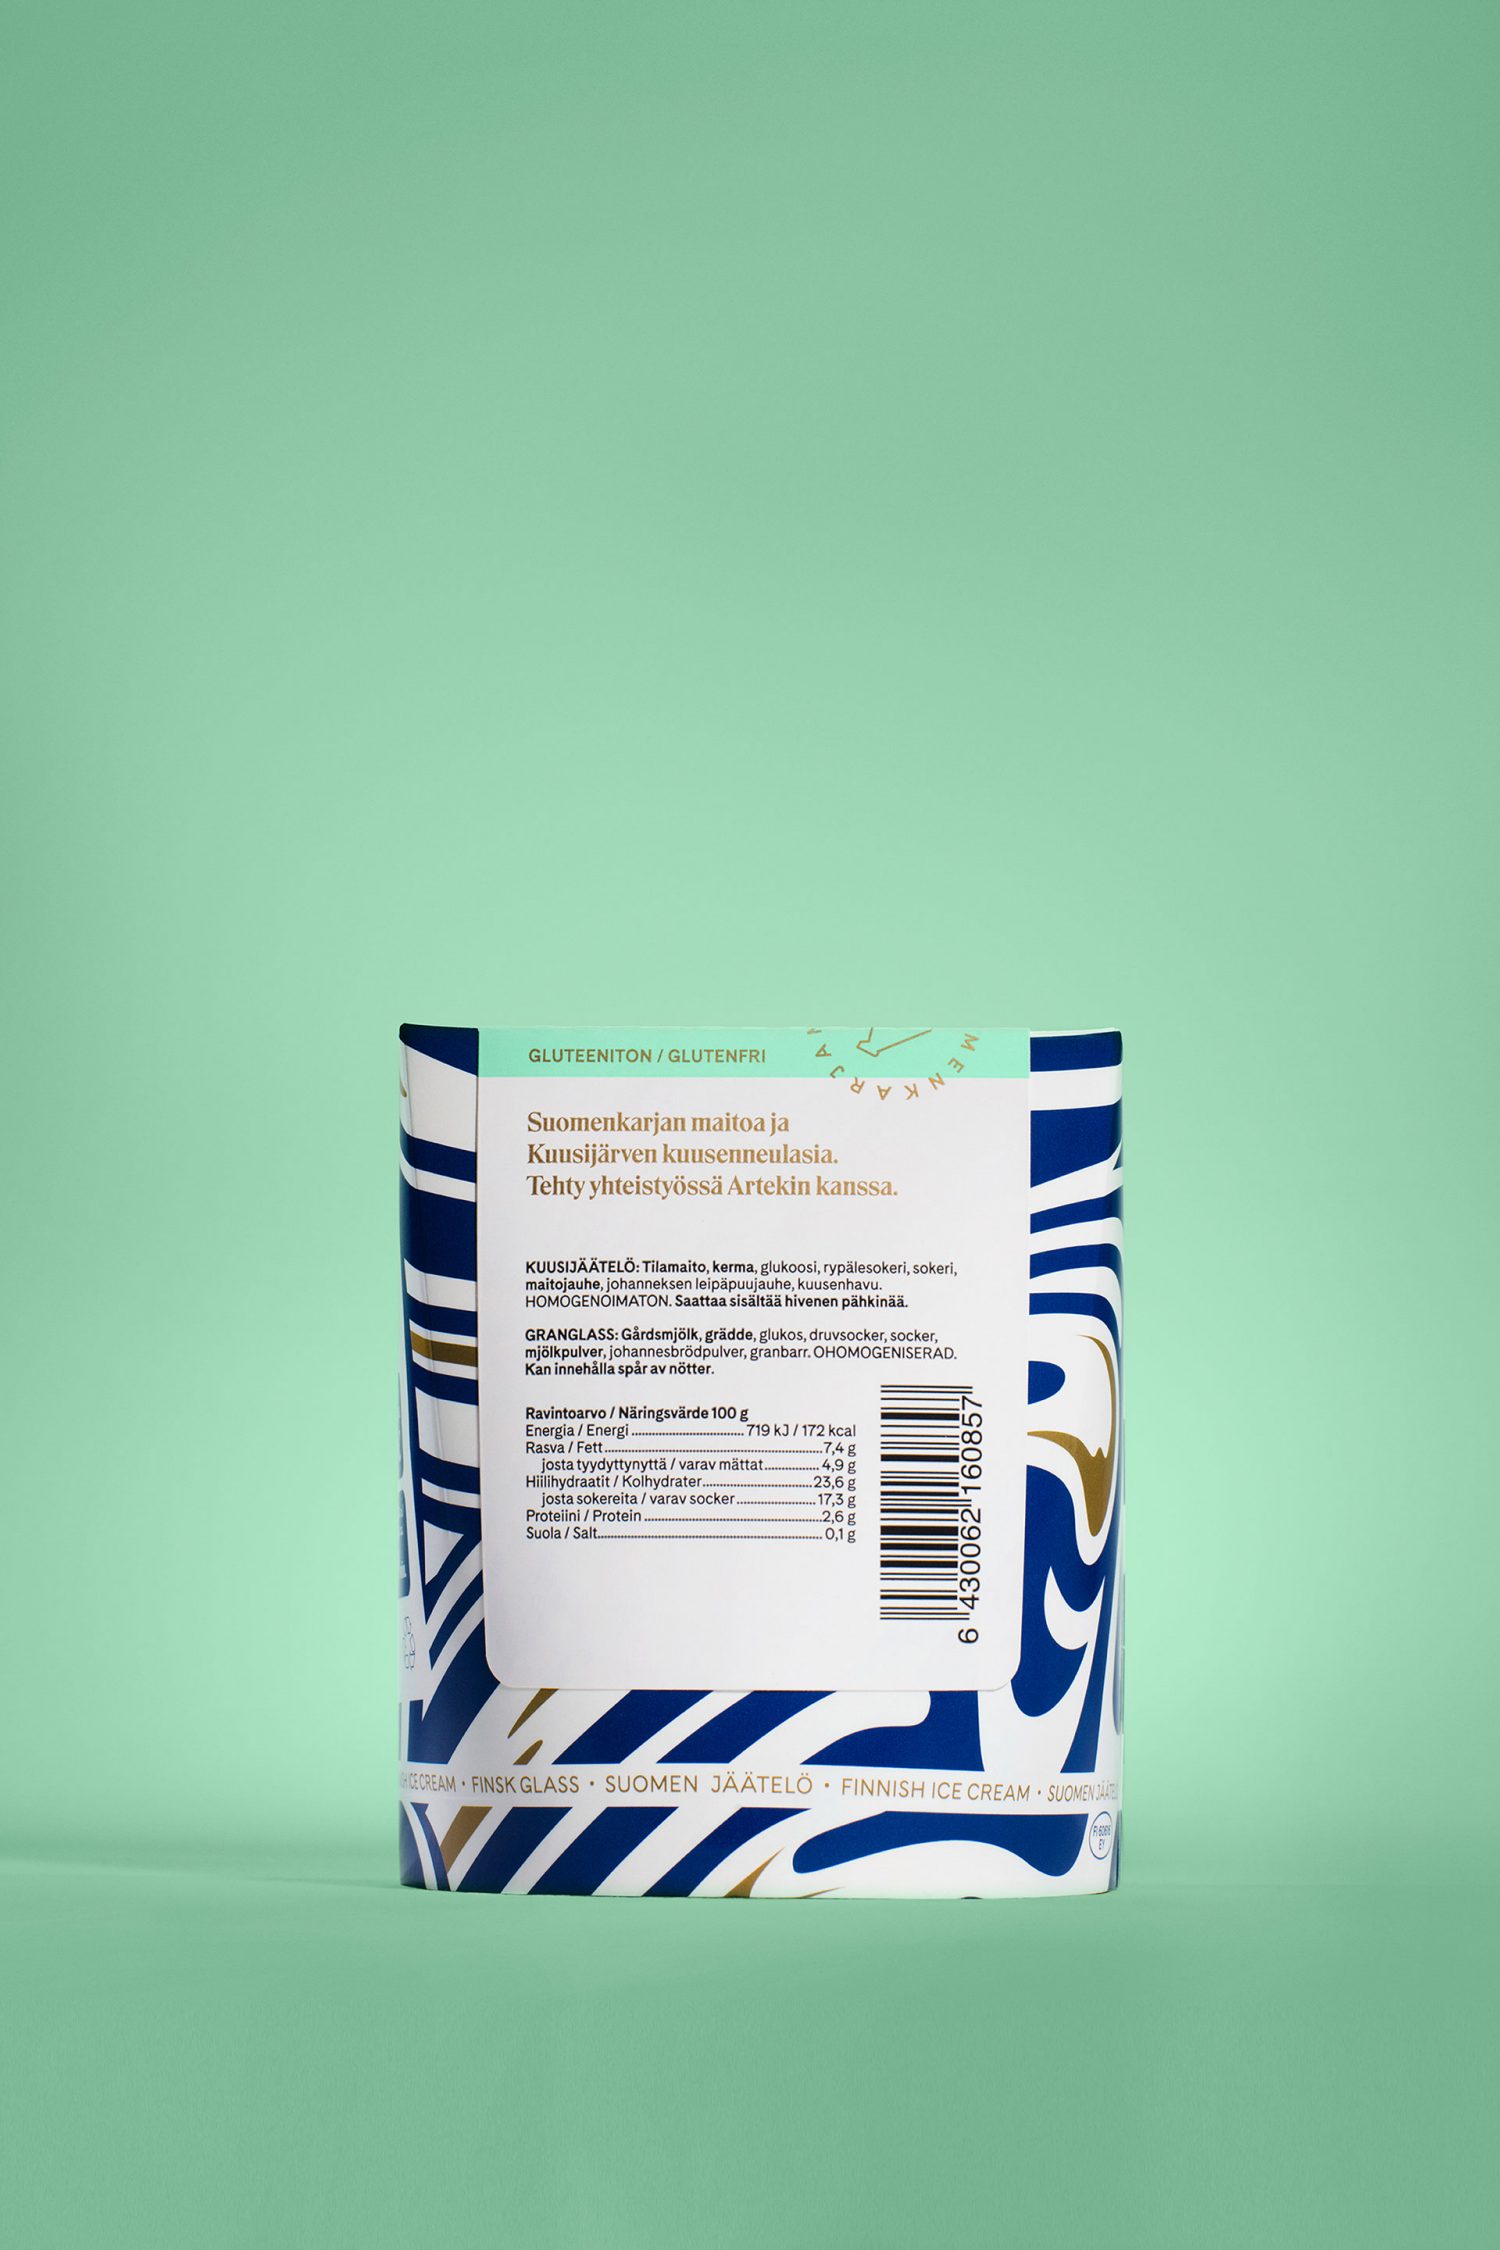 Brand identity and package design by Helsinki-based Werklig for Finnish ice cream brand Suomen Jäätelö 